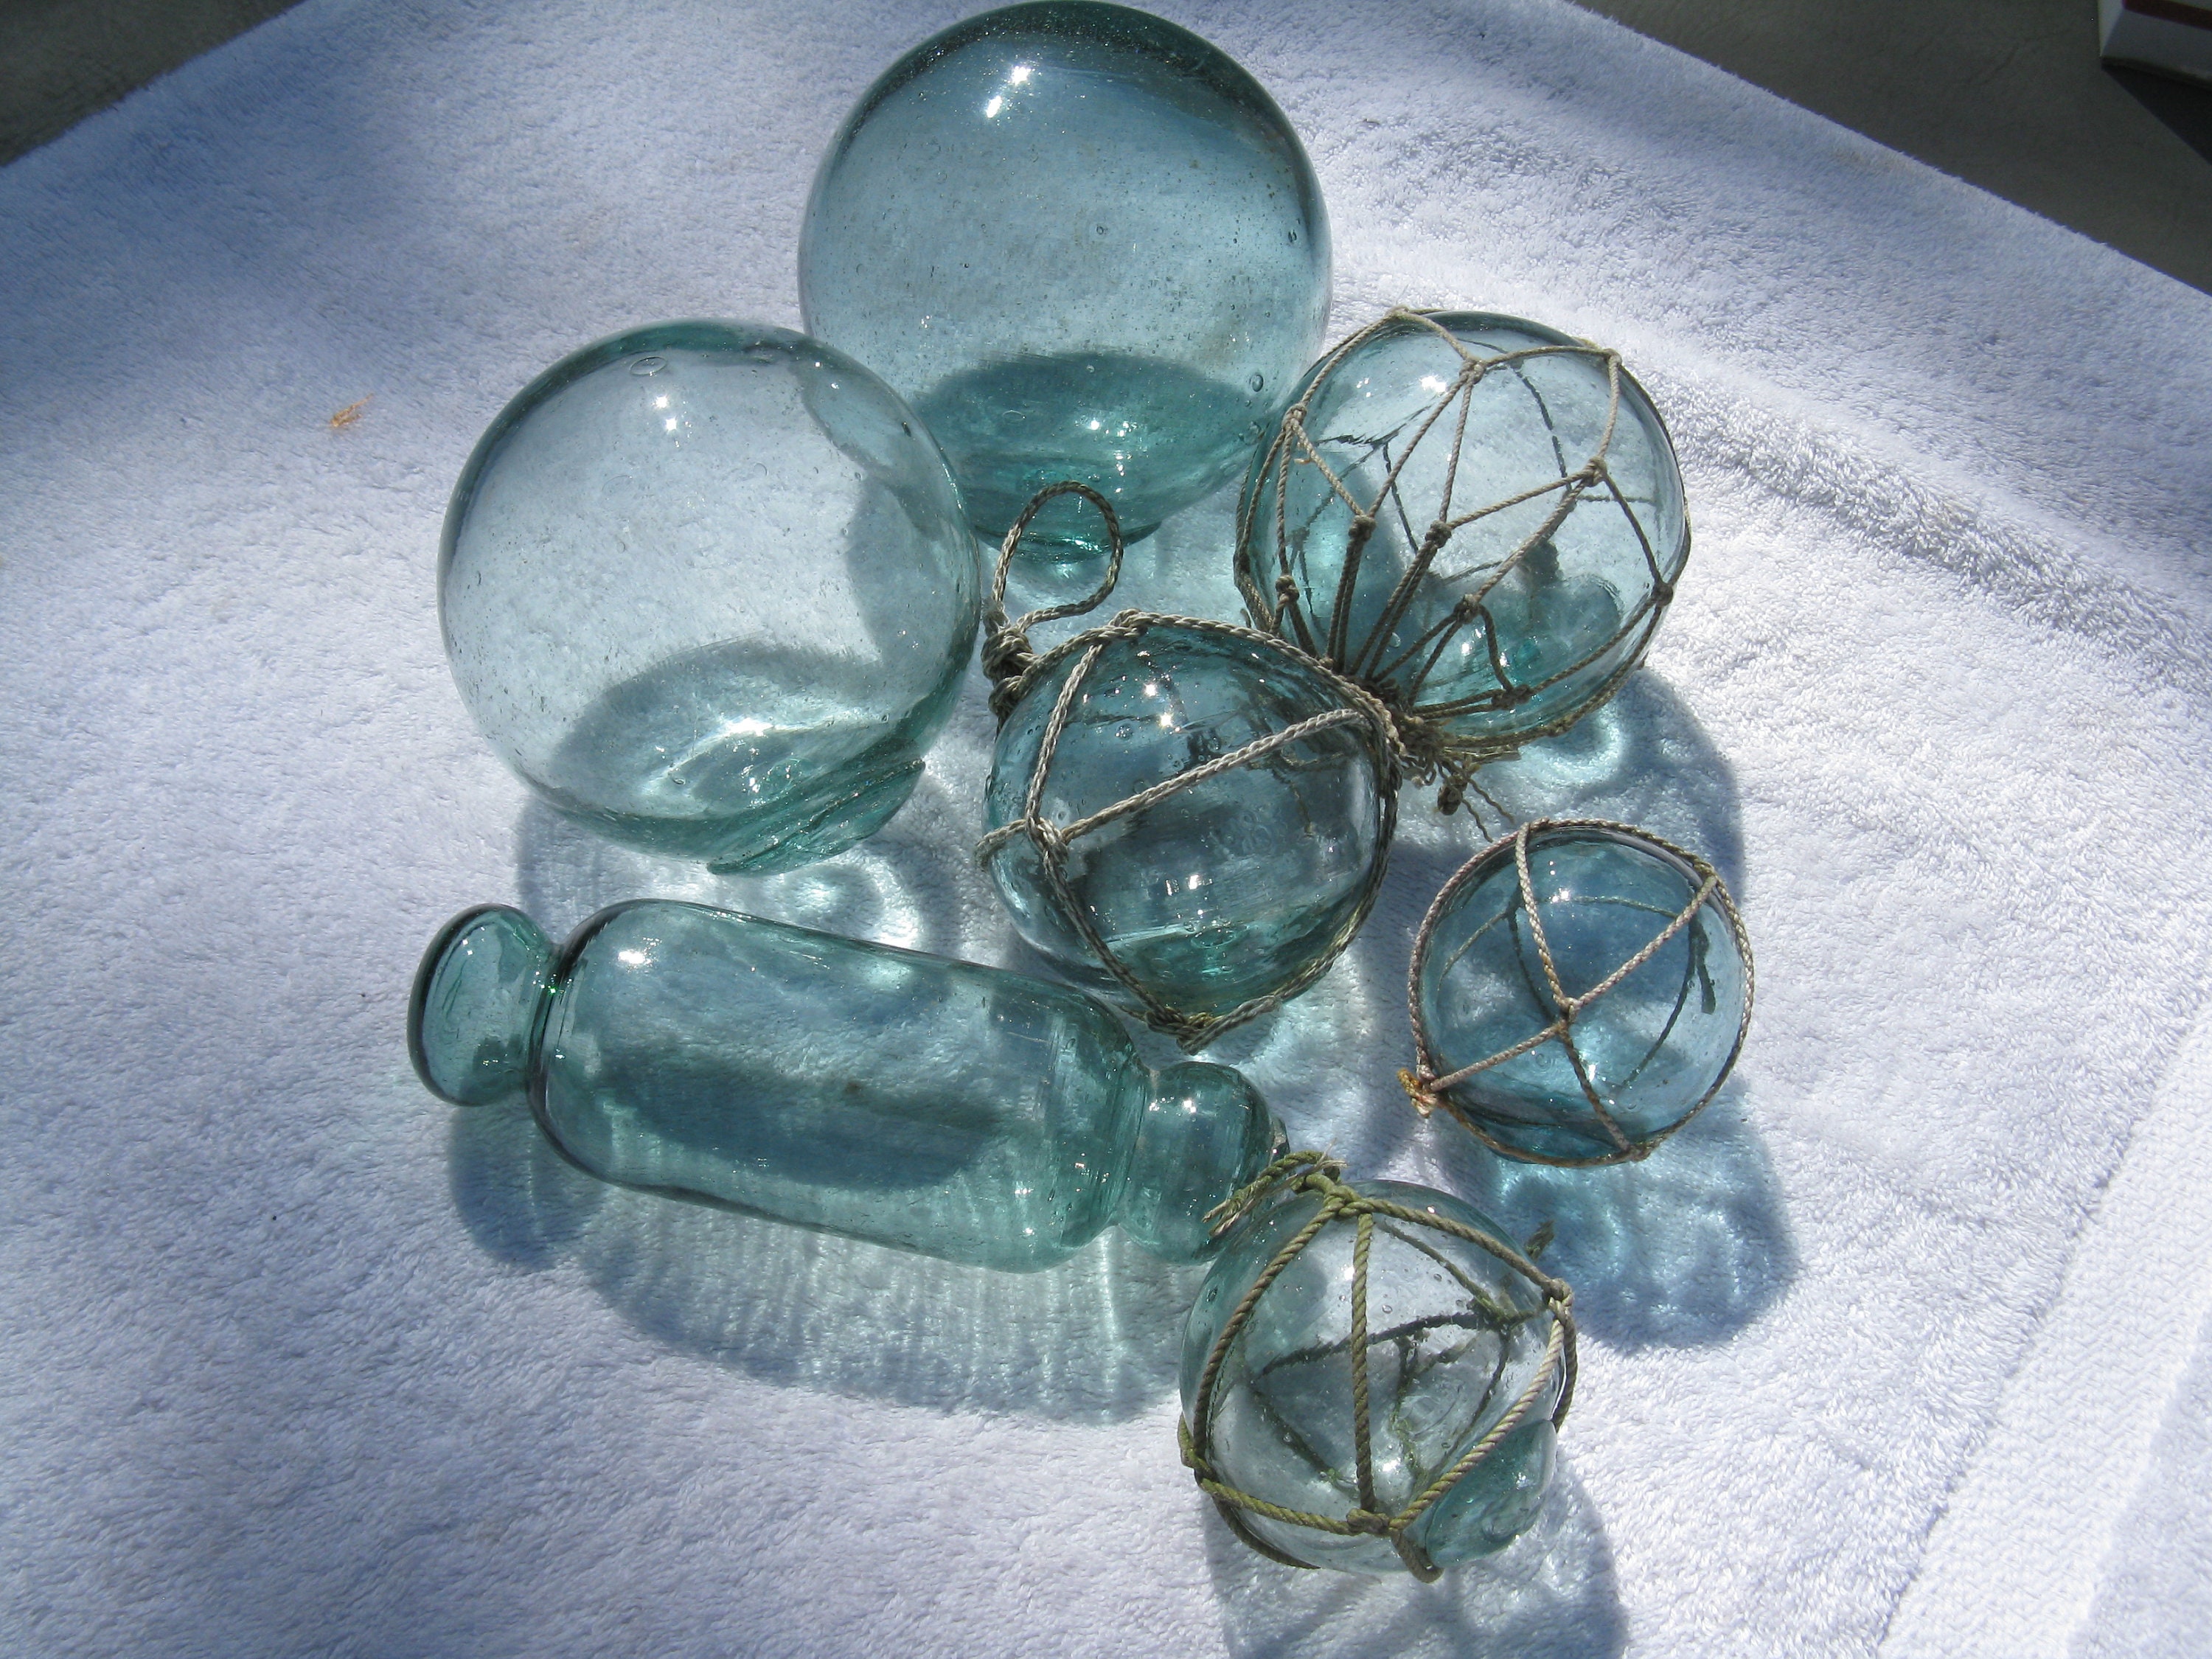 Starter Group of 7 Japanese Glass Fishing Floats, 2.55 Glass Floats, Starter  Kit, Beach House Decor 